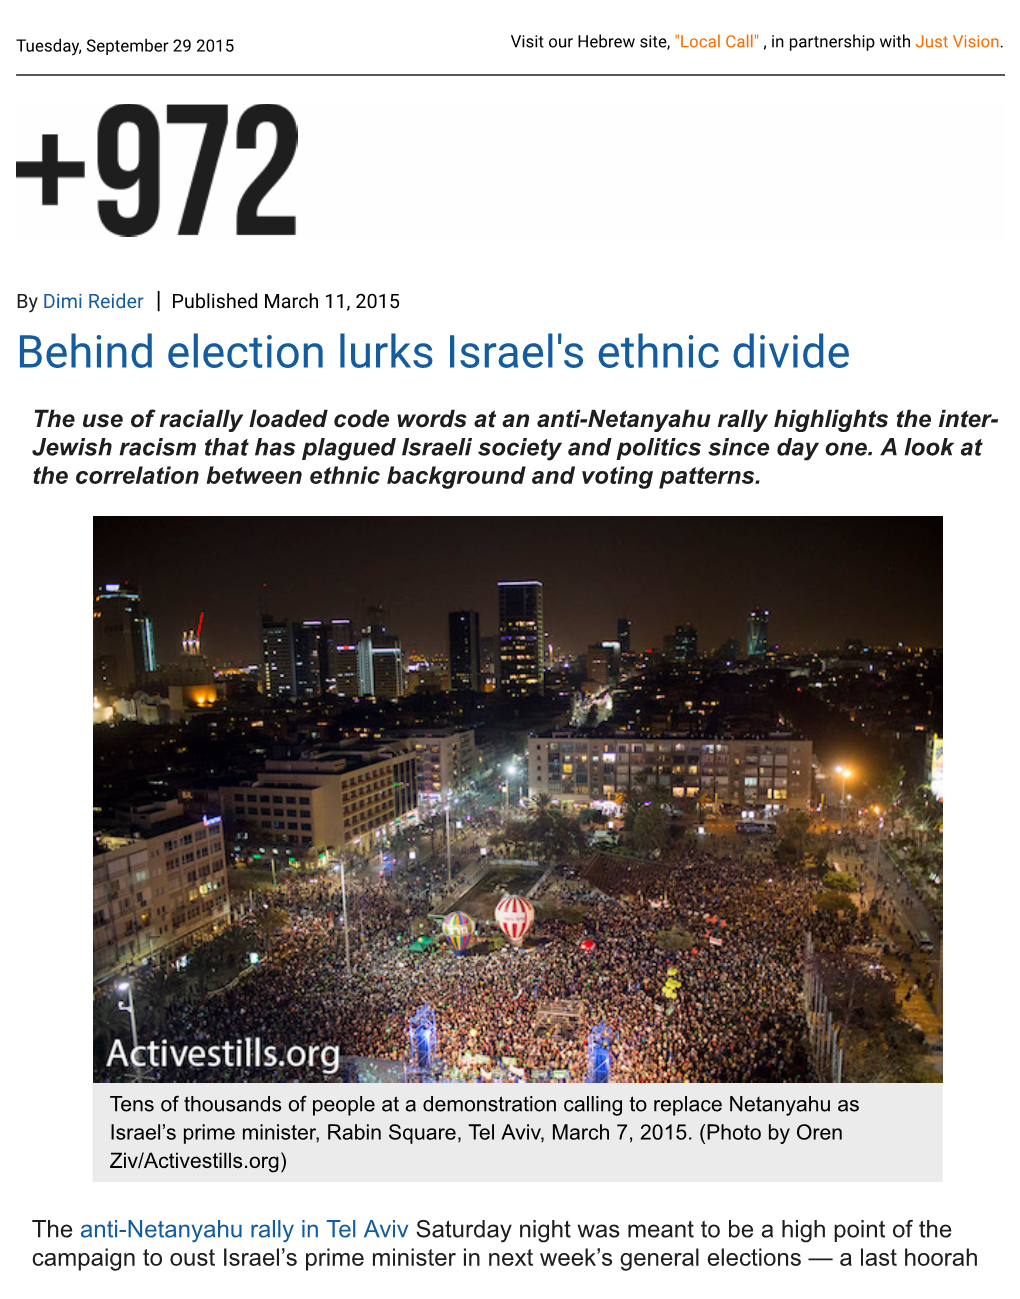 Behind Election Lurks Israel's Ethnic Divide